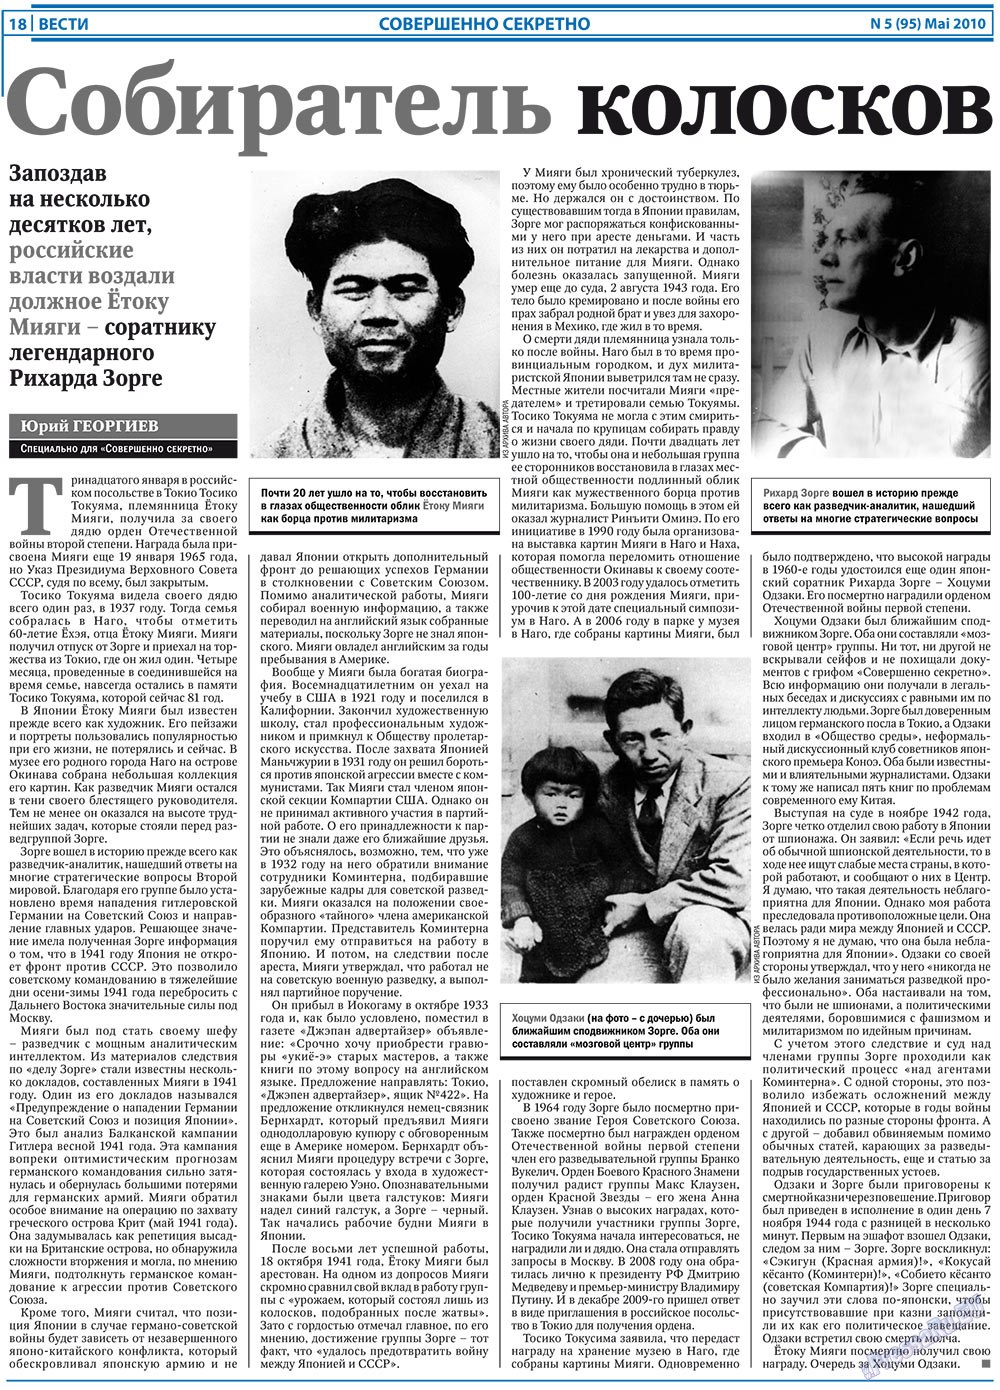 Вести, газета. 2010 №5 стр.18